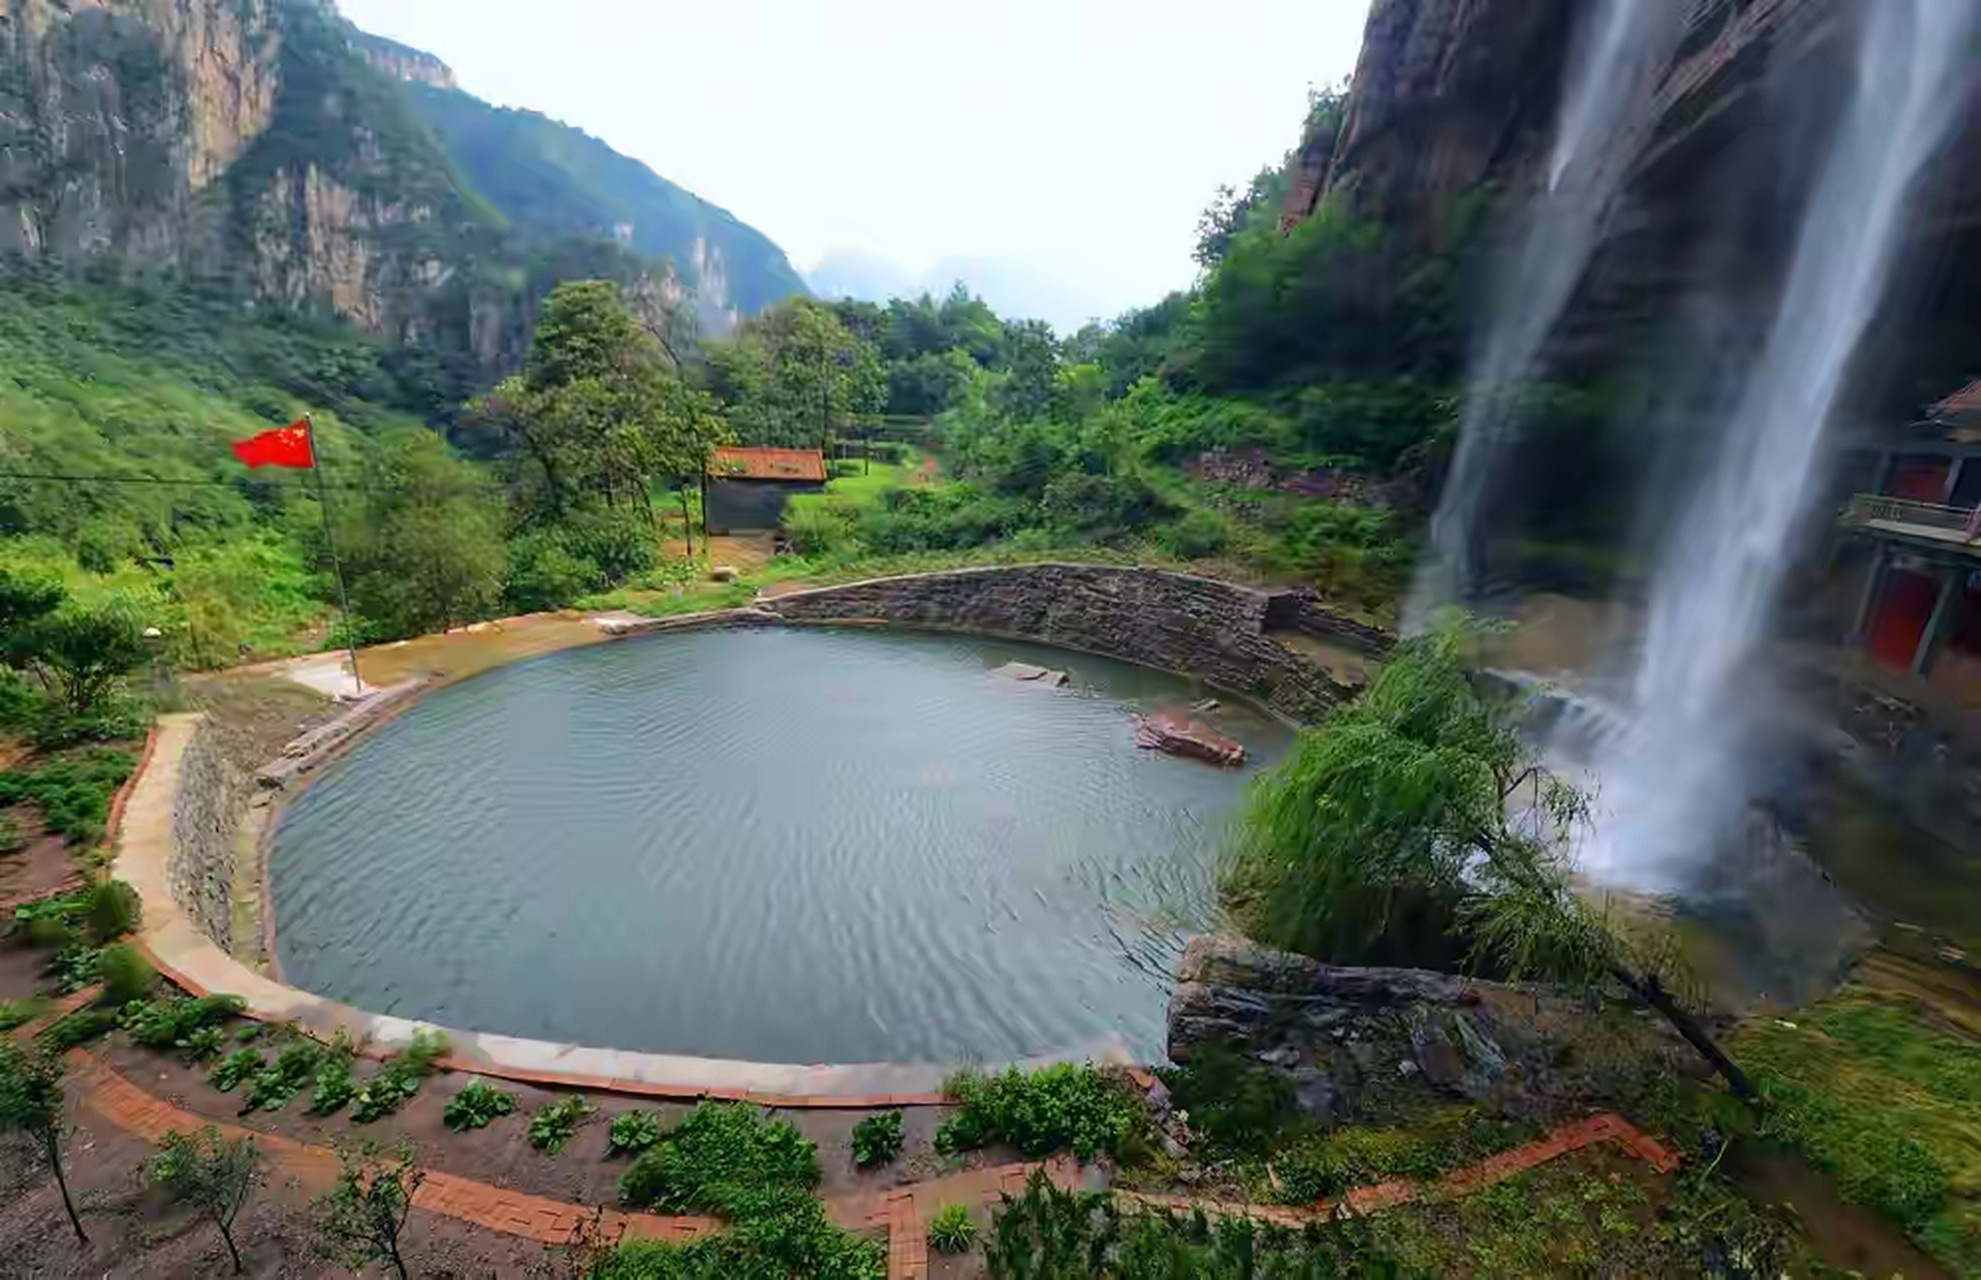 在河南省林州市合涧镇茶饭庄村的悬崖下有一座历史悠久的寺院——仙岩